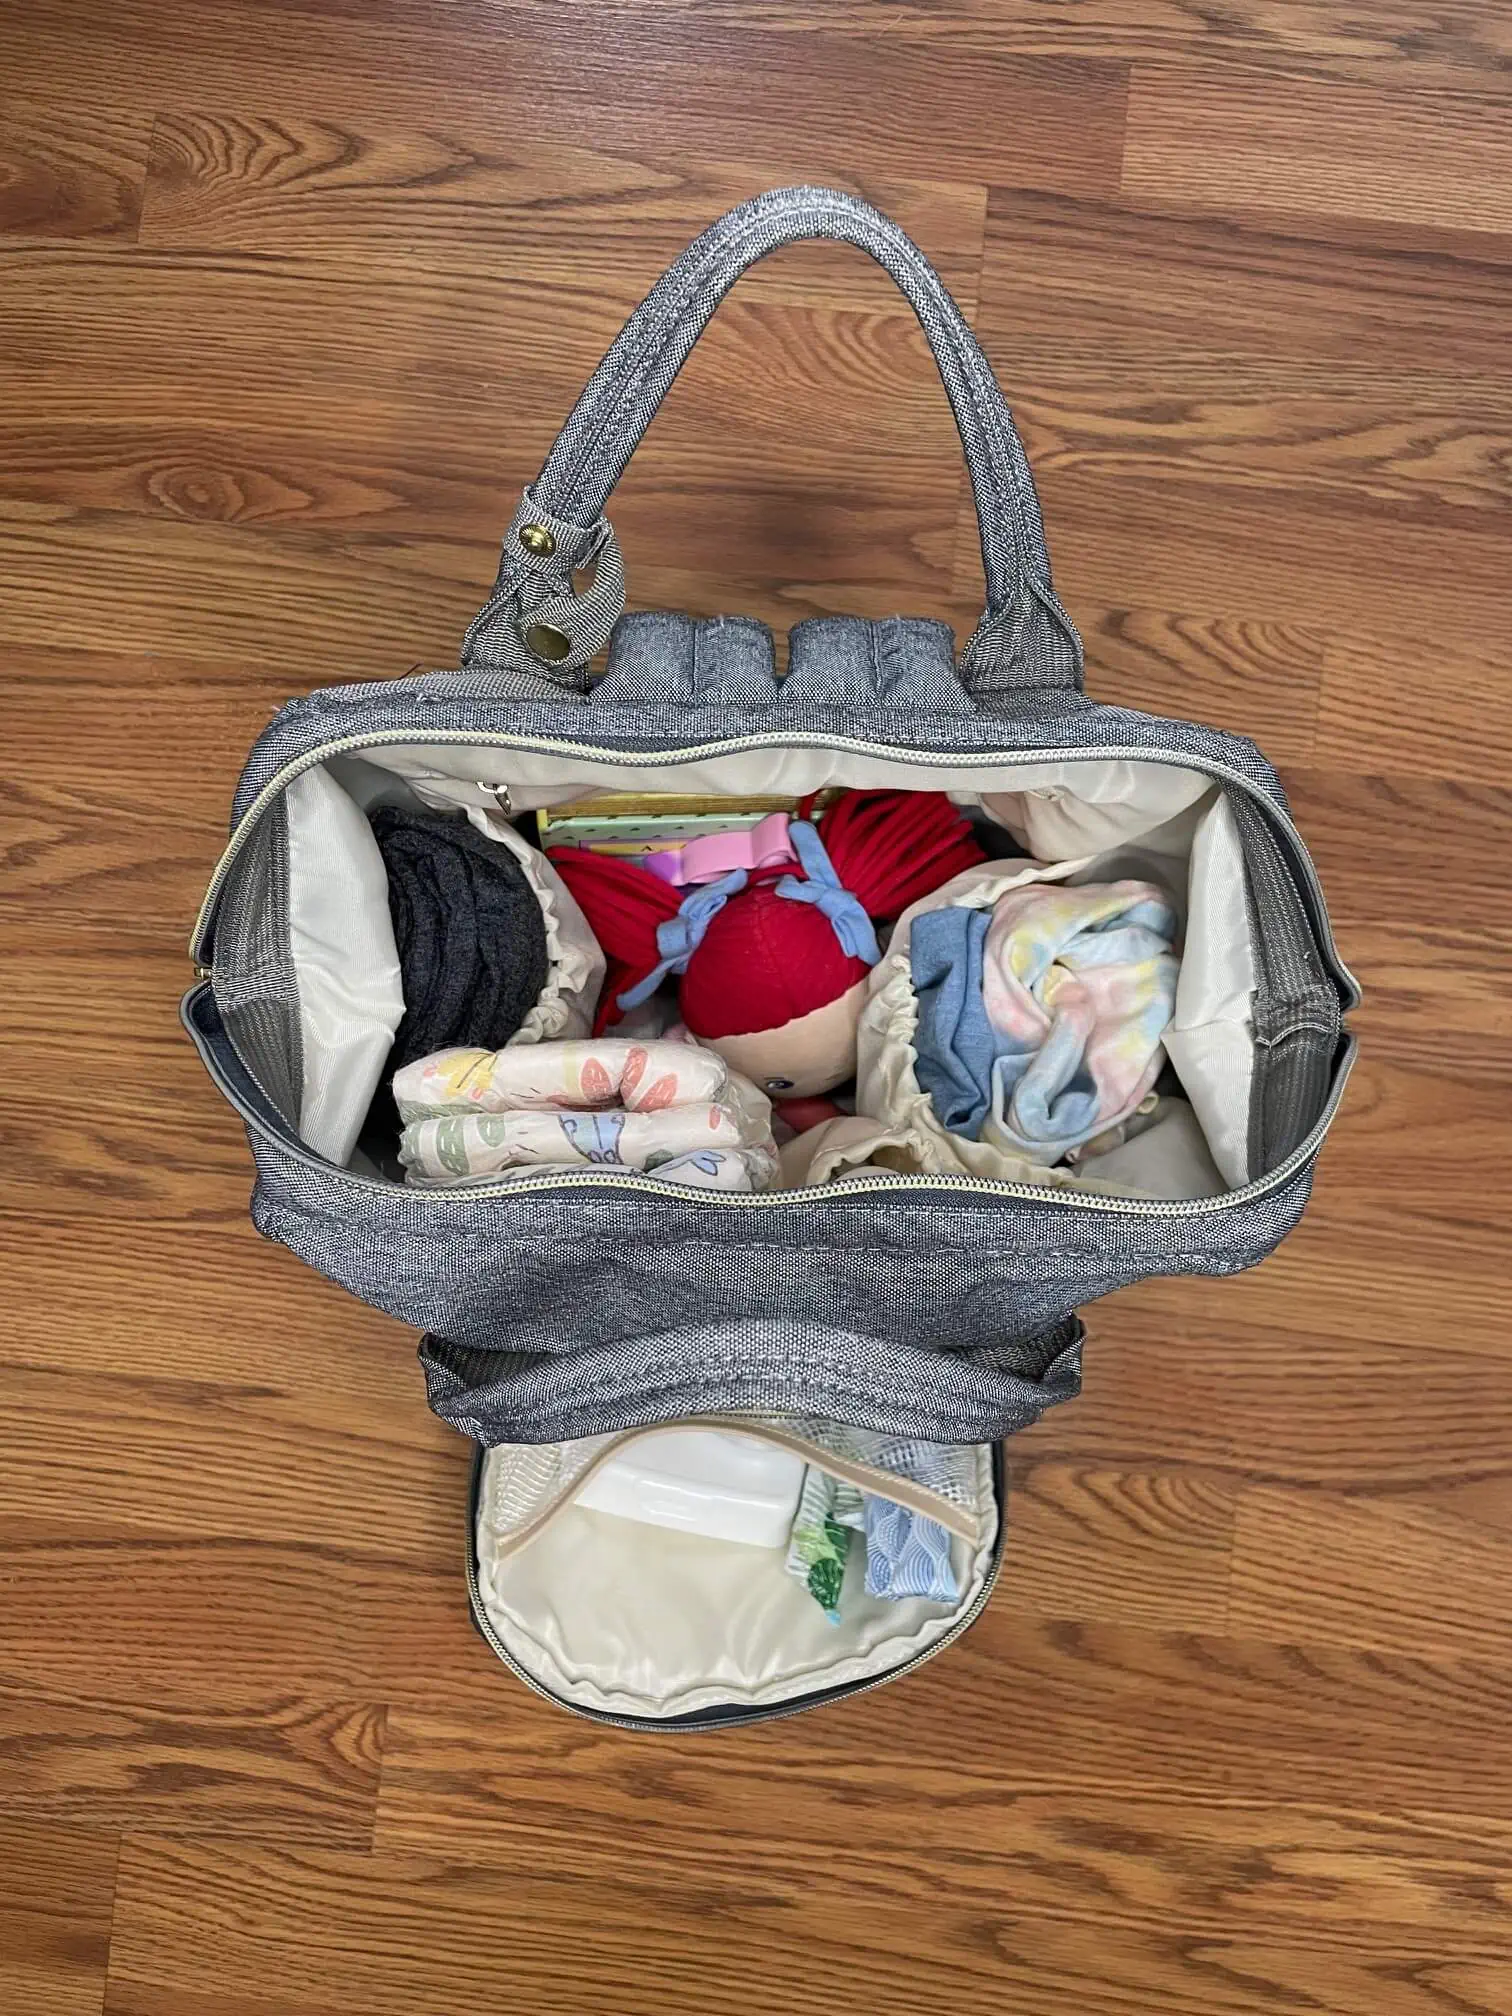 diaper bag blog